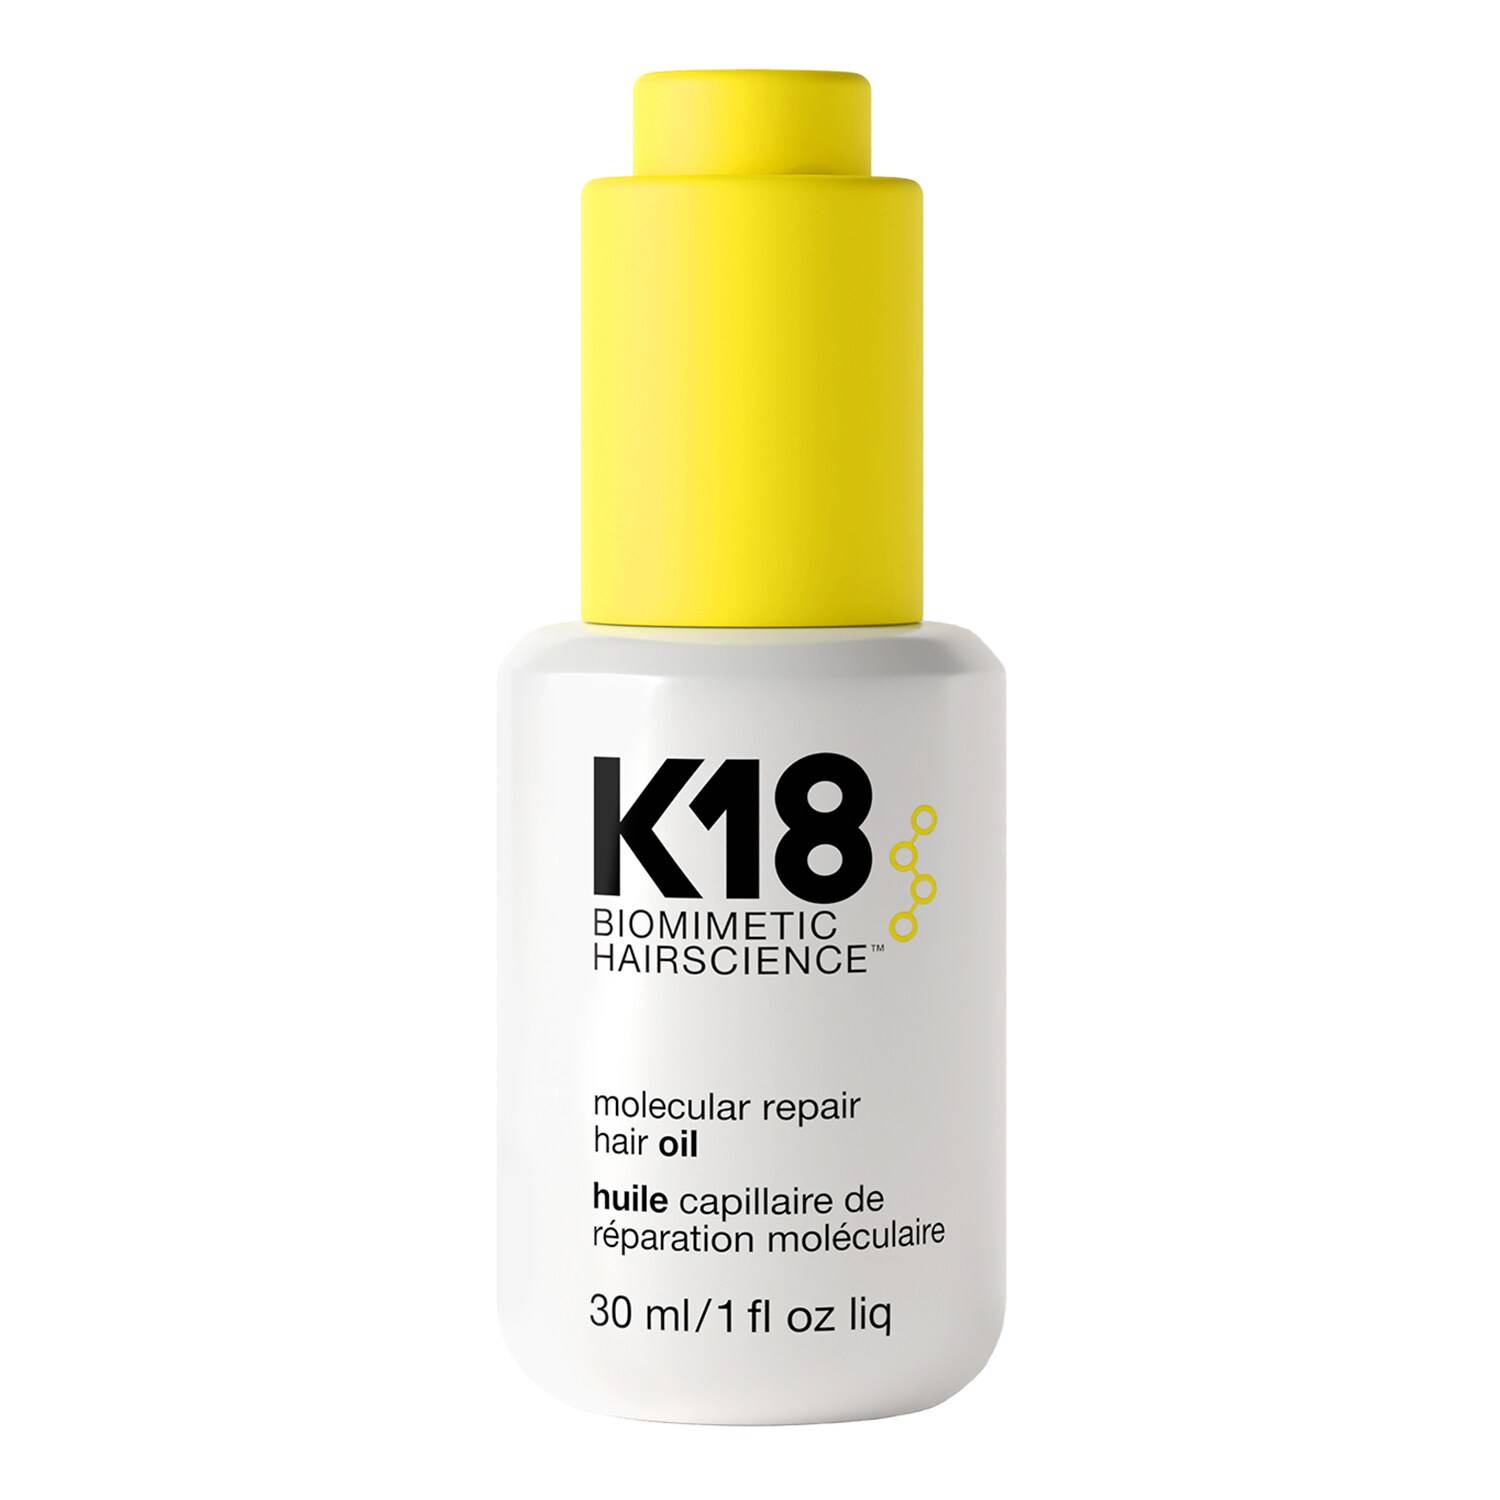 K18 Molecular Repair Hair Oil - Smooth + Repair Damaged Hair 30Ml